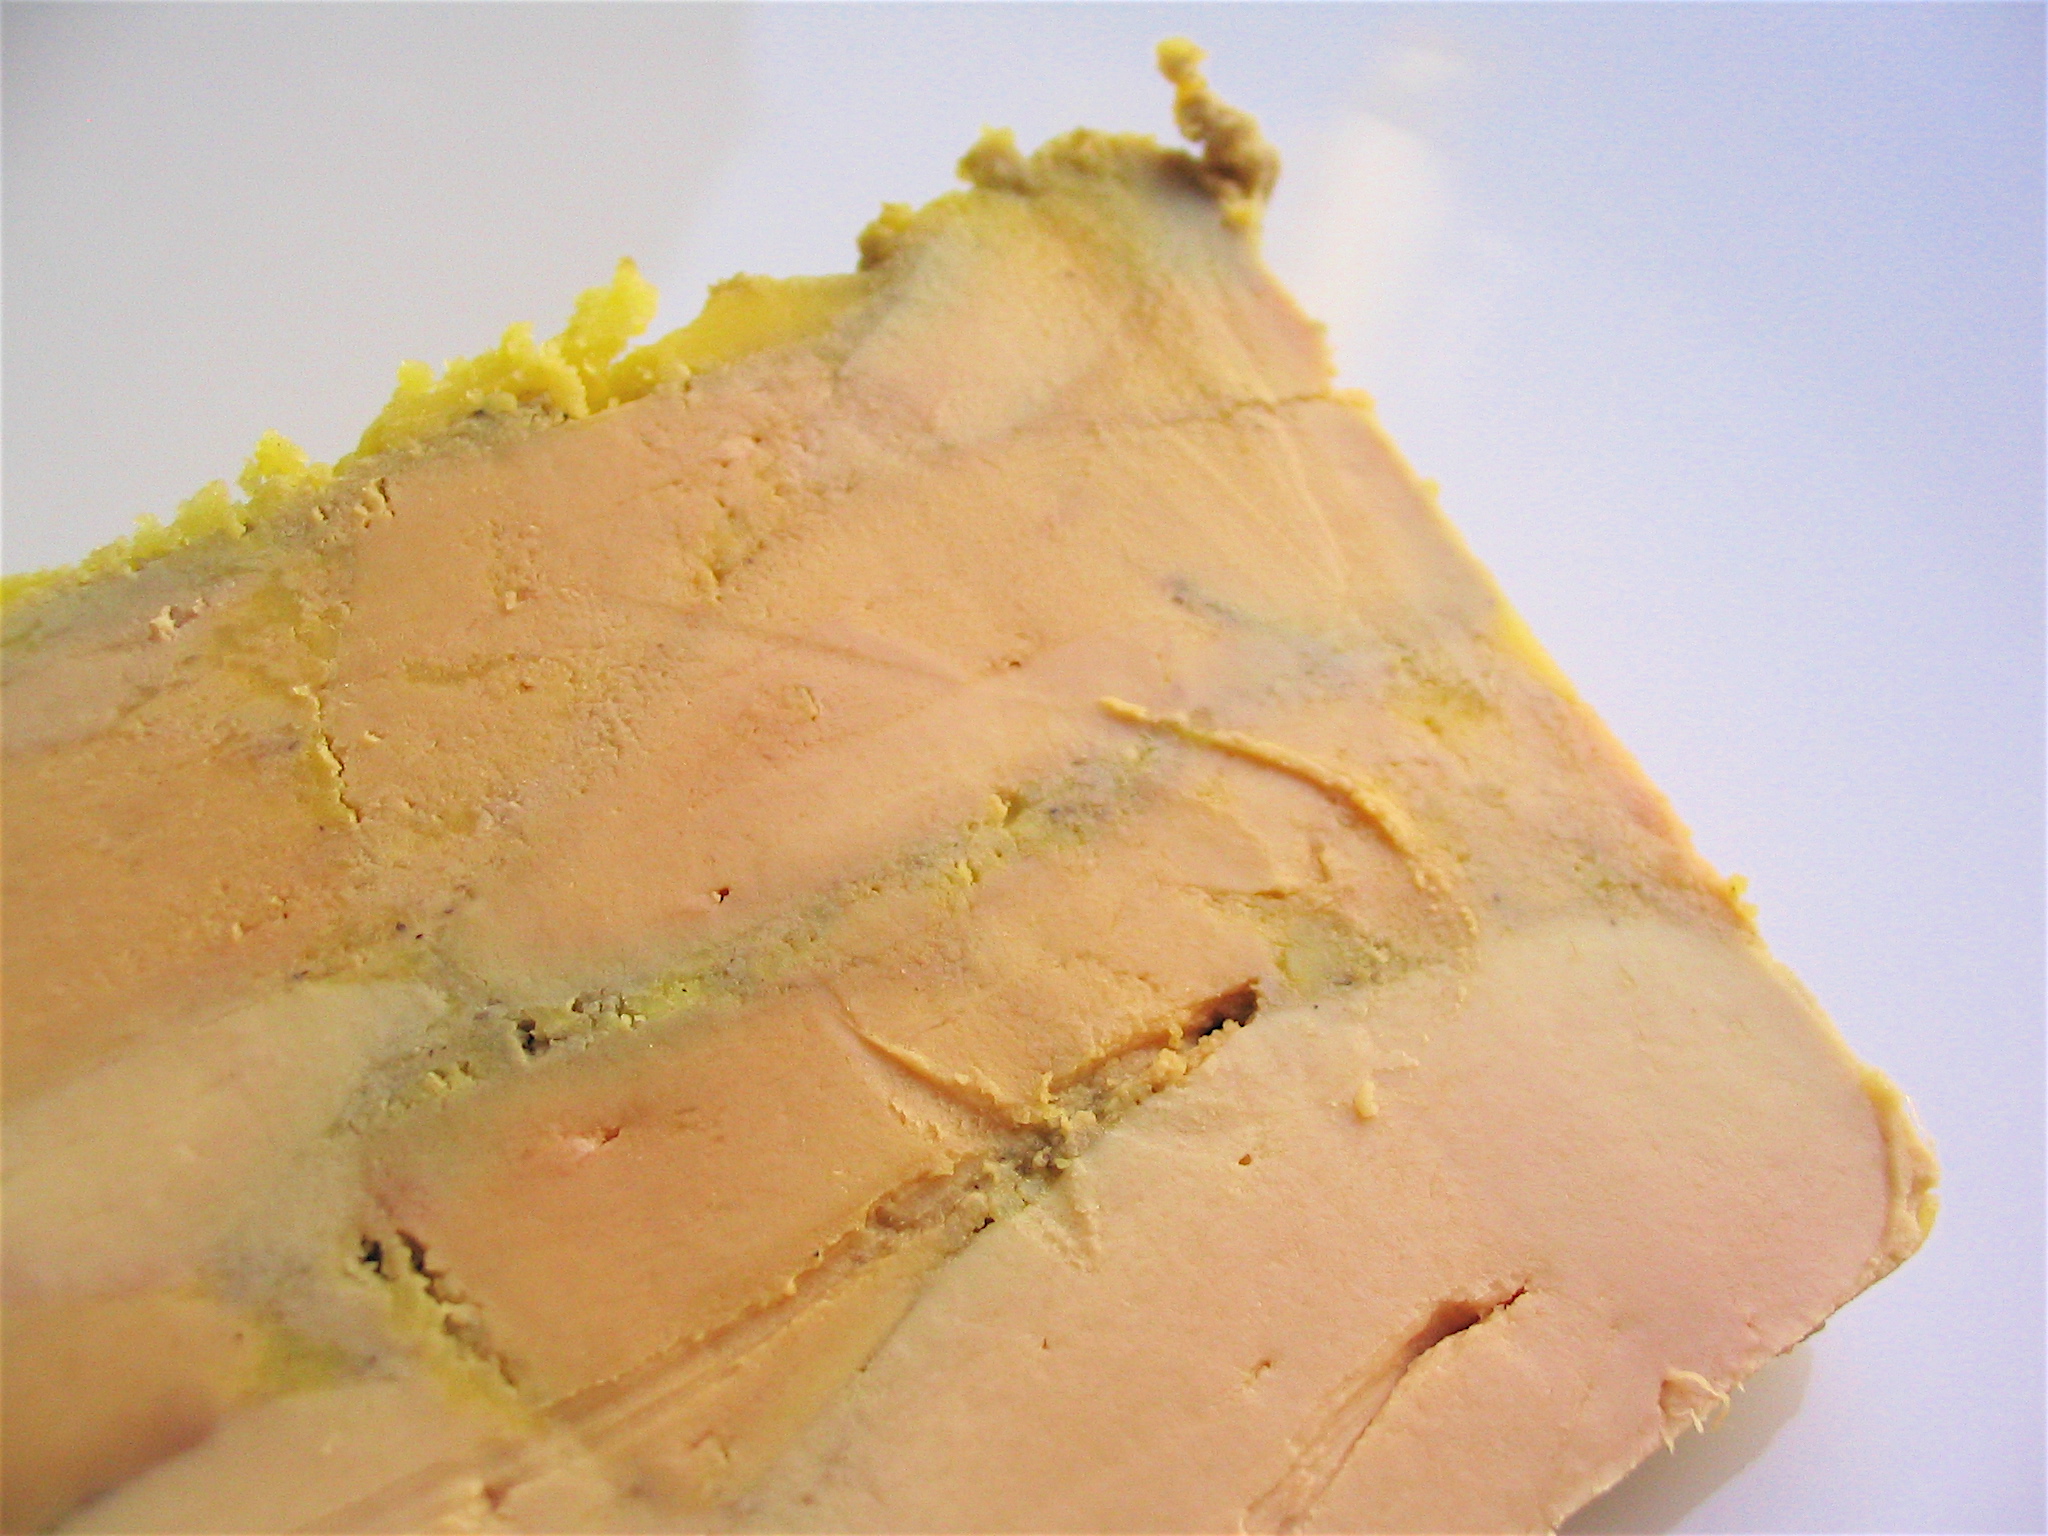 MELANGE 4 BAIES ENTIER 40 g viandes blanches foie gras carpaccio